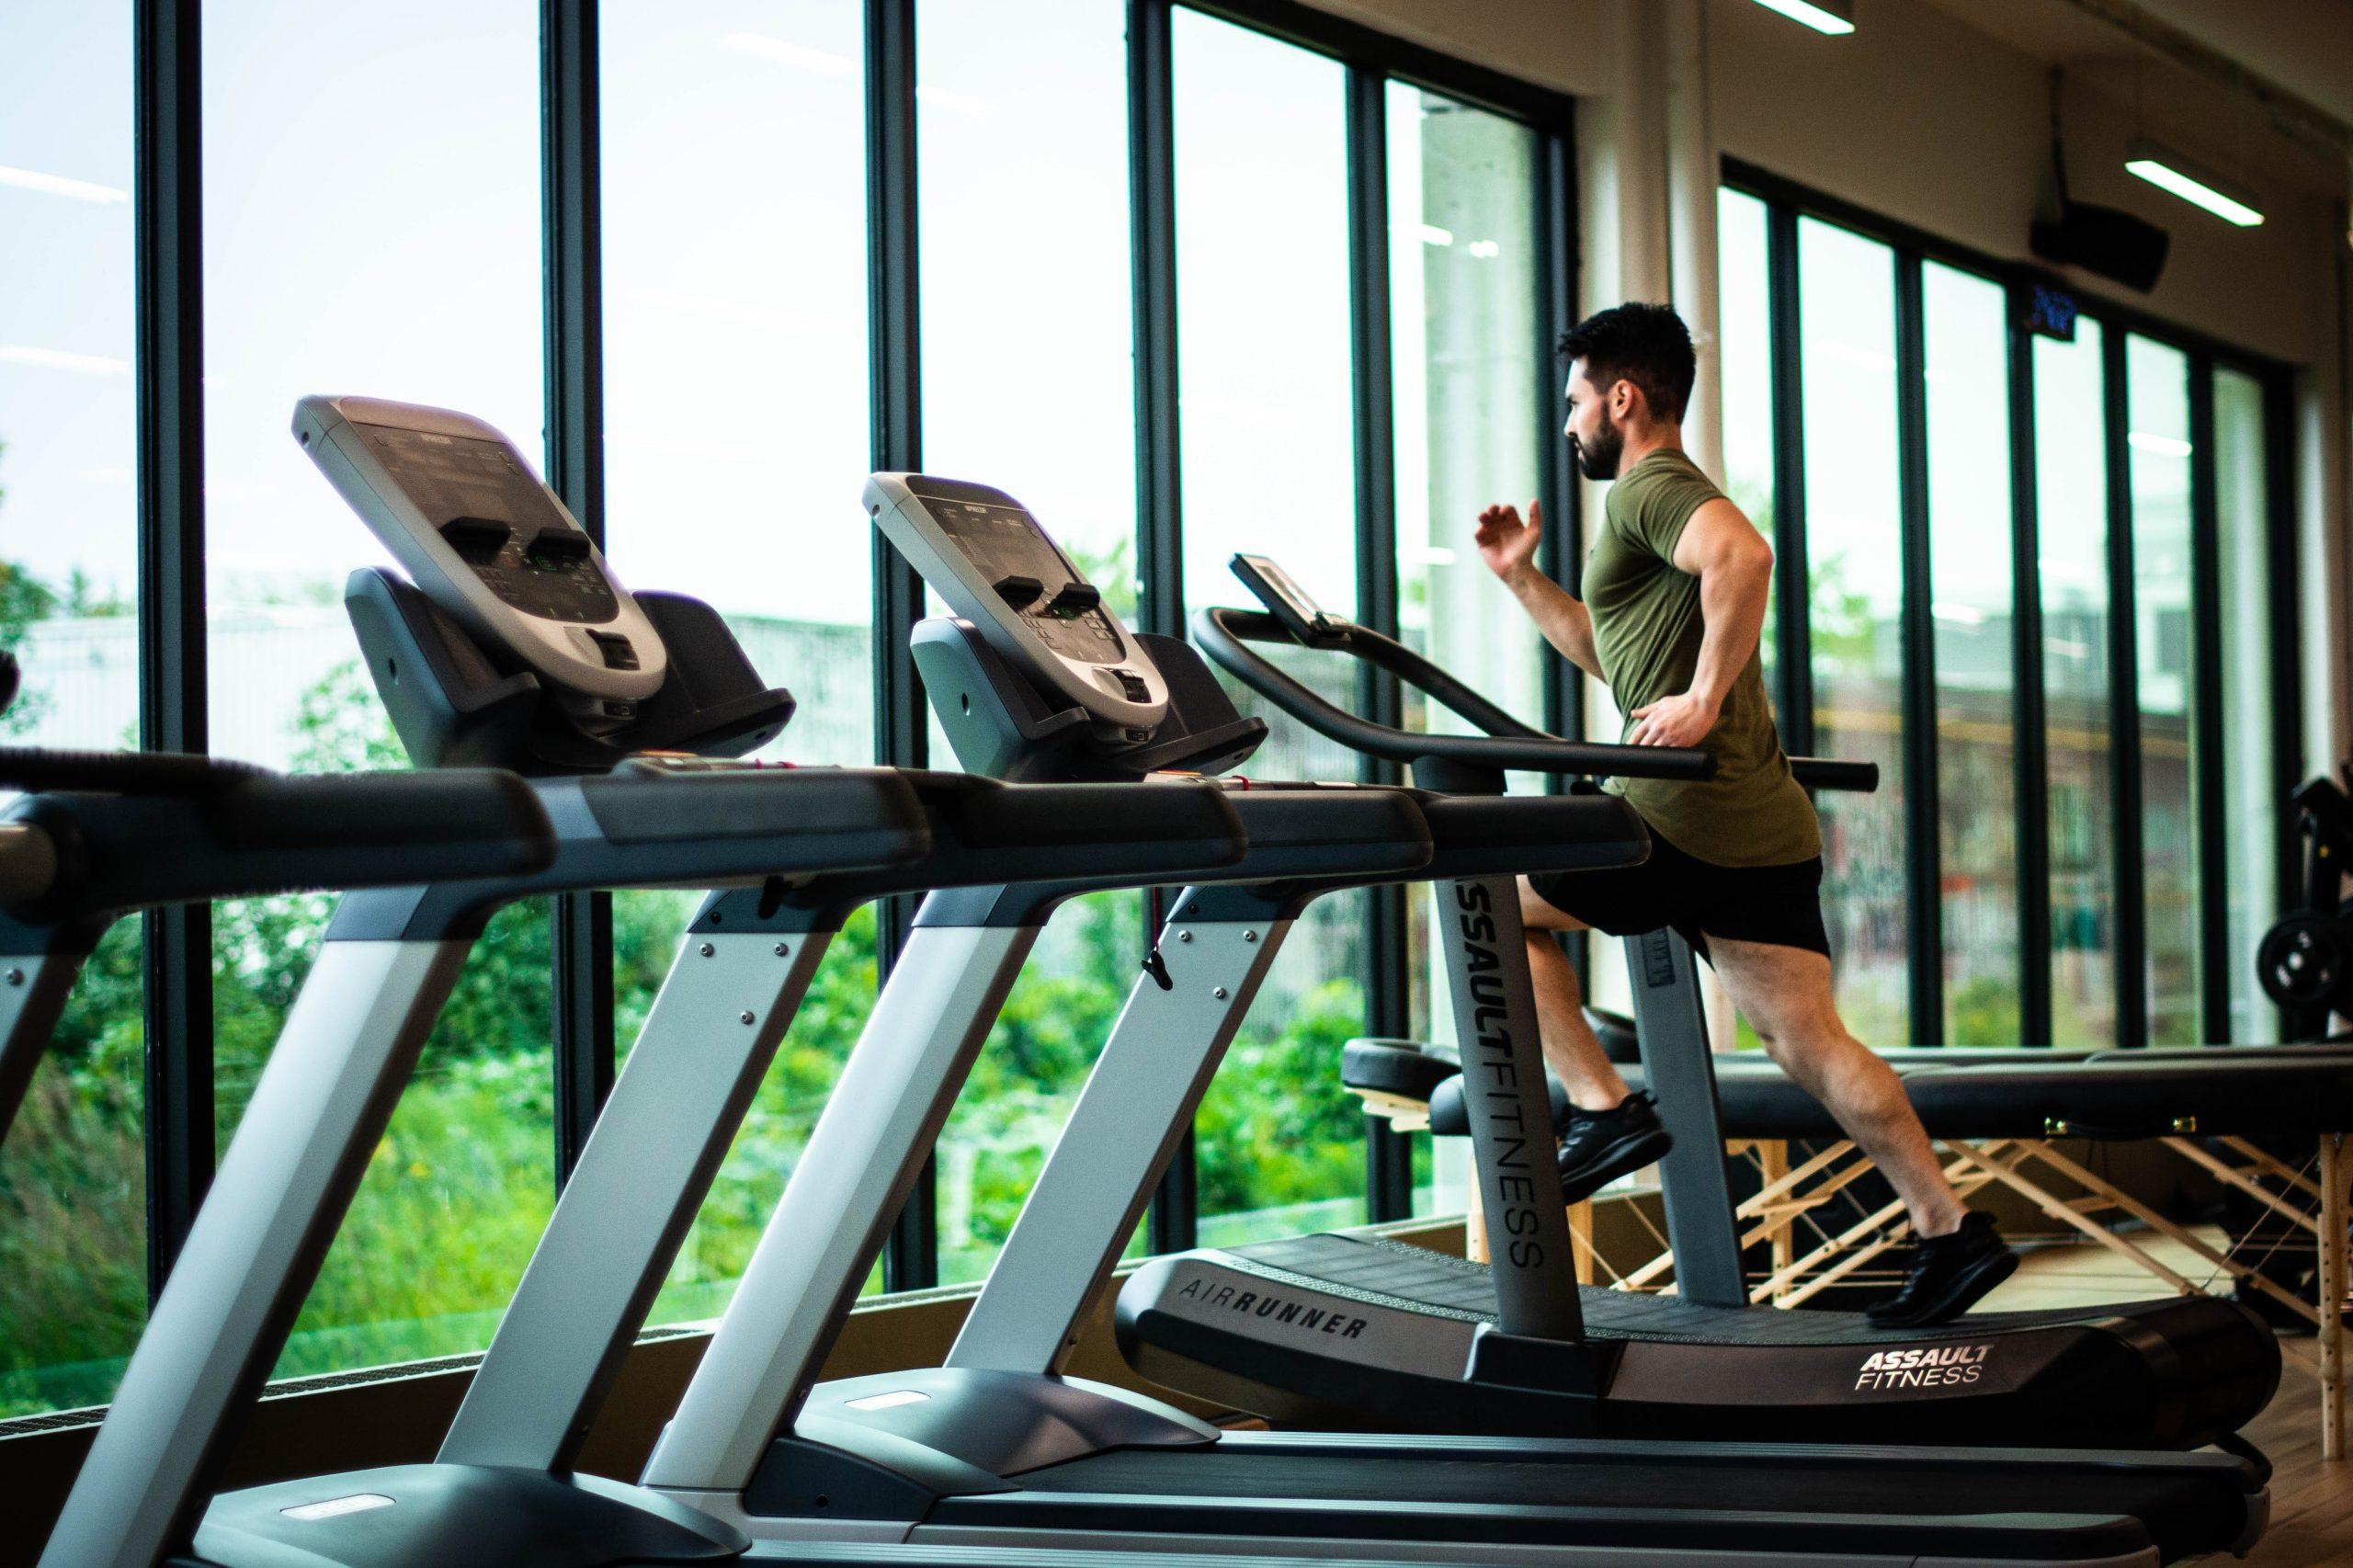 Tập thể dục tim mạch thường xuyên như chạy bộ giúp tăng cường chức năng của hệ tuần hoàn và hỗ trợ lưu lượng máu. (Nguồn: Internet)